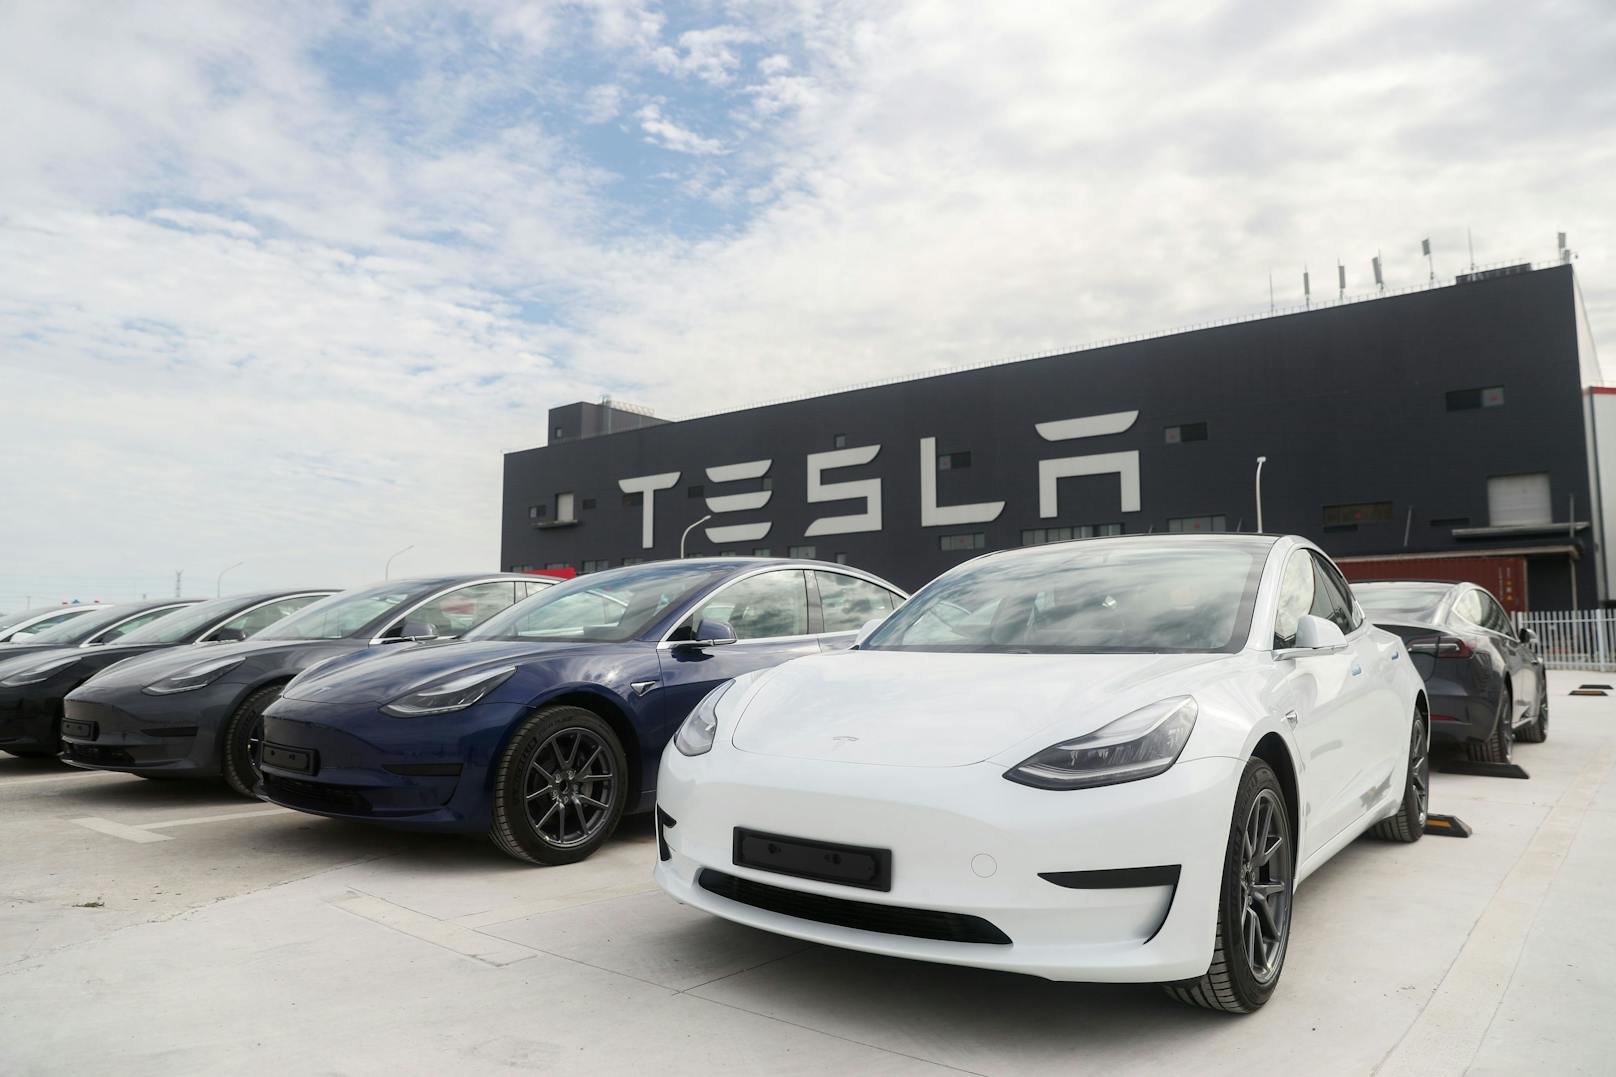 Tesla ruft in den USA wegen Autopilot-Problemen mehr als 360.000 Autos zurück.